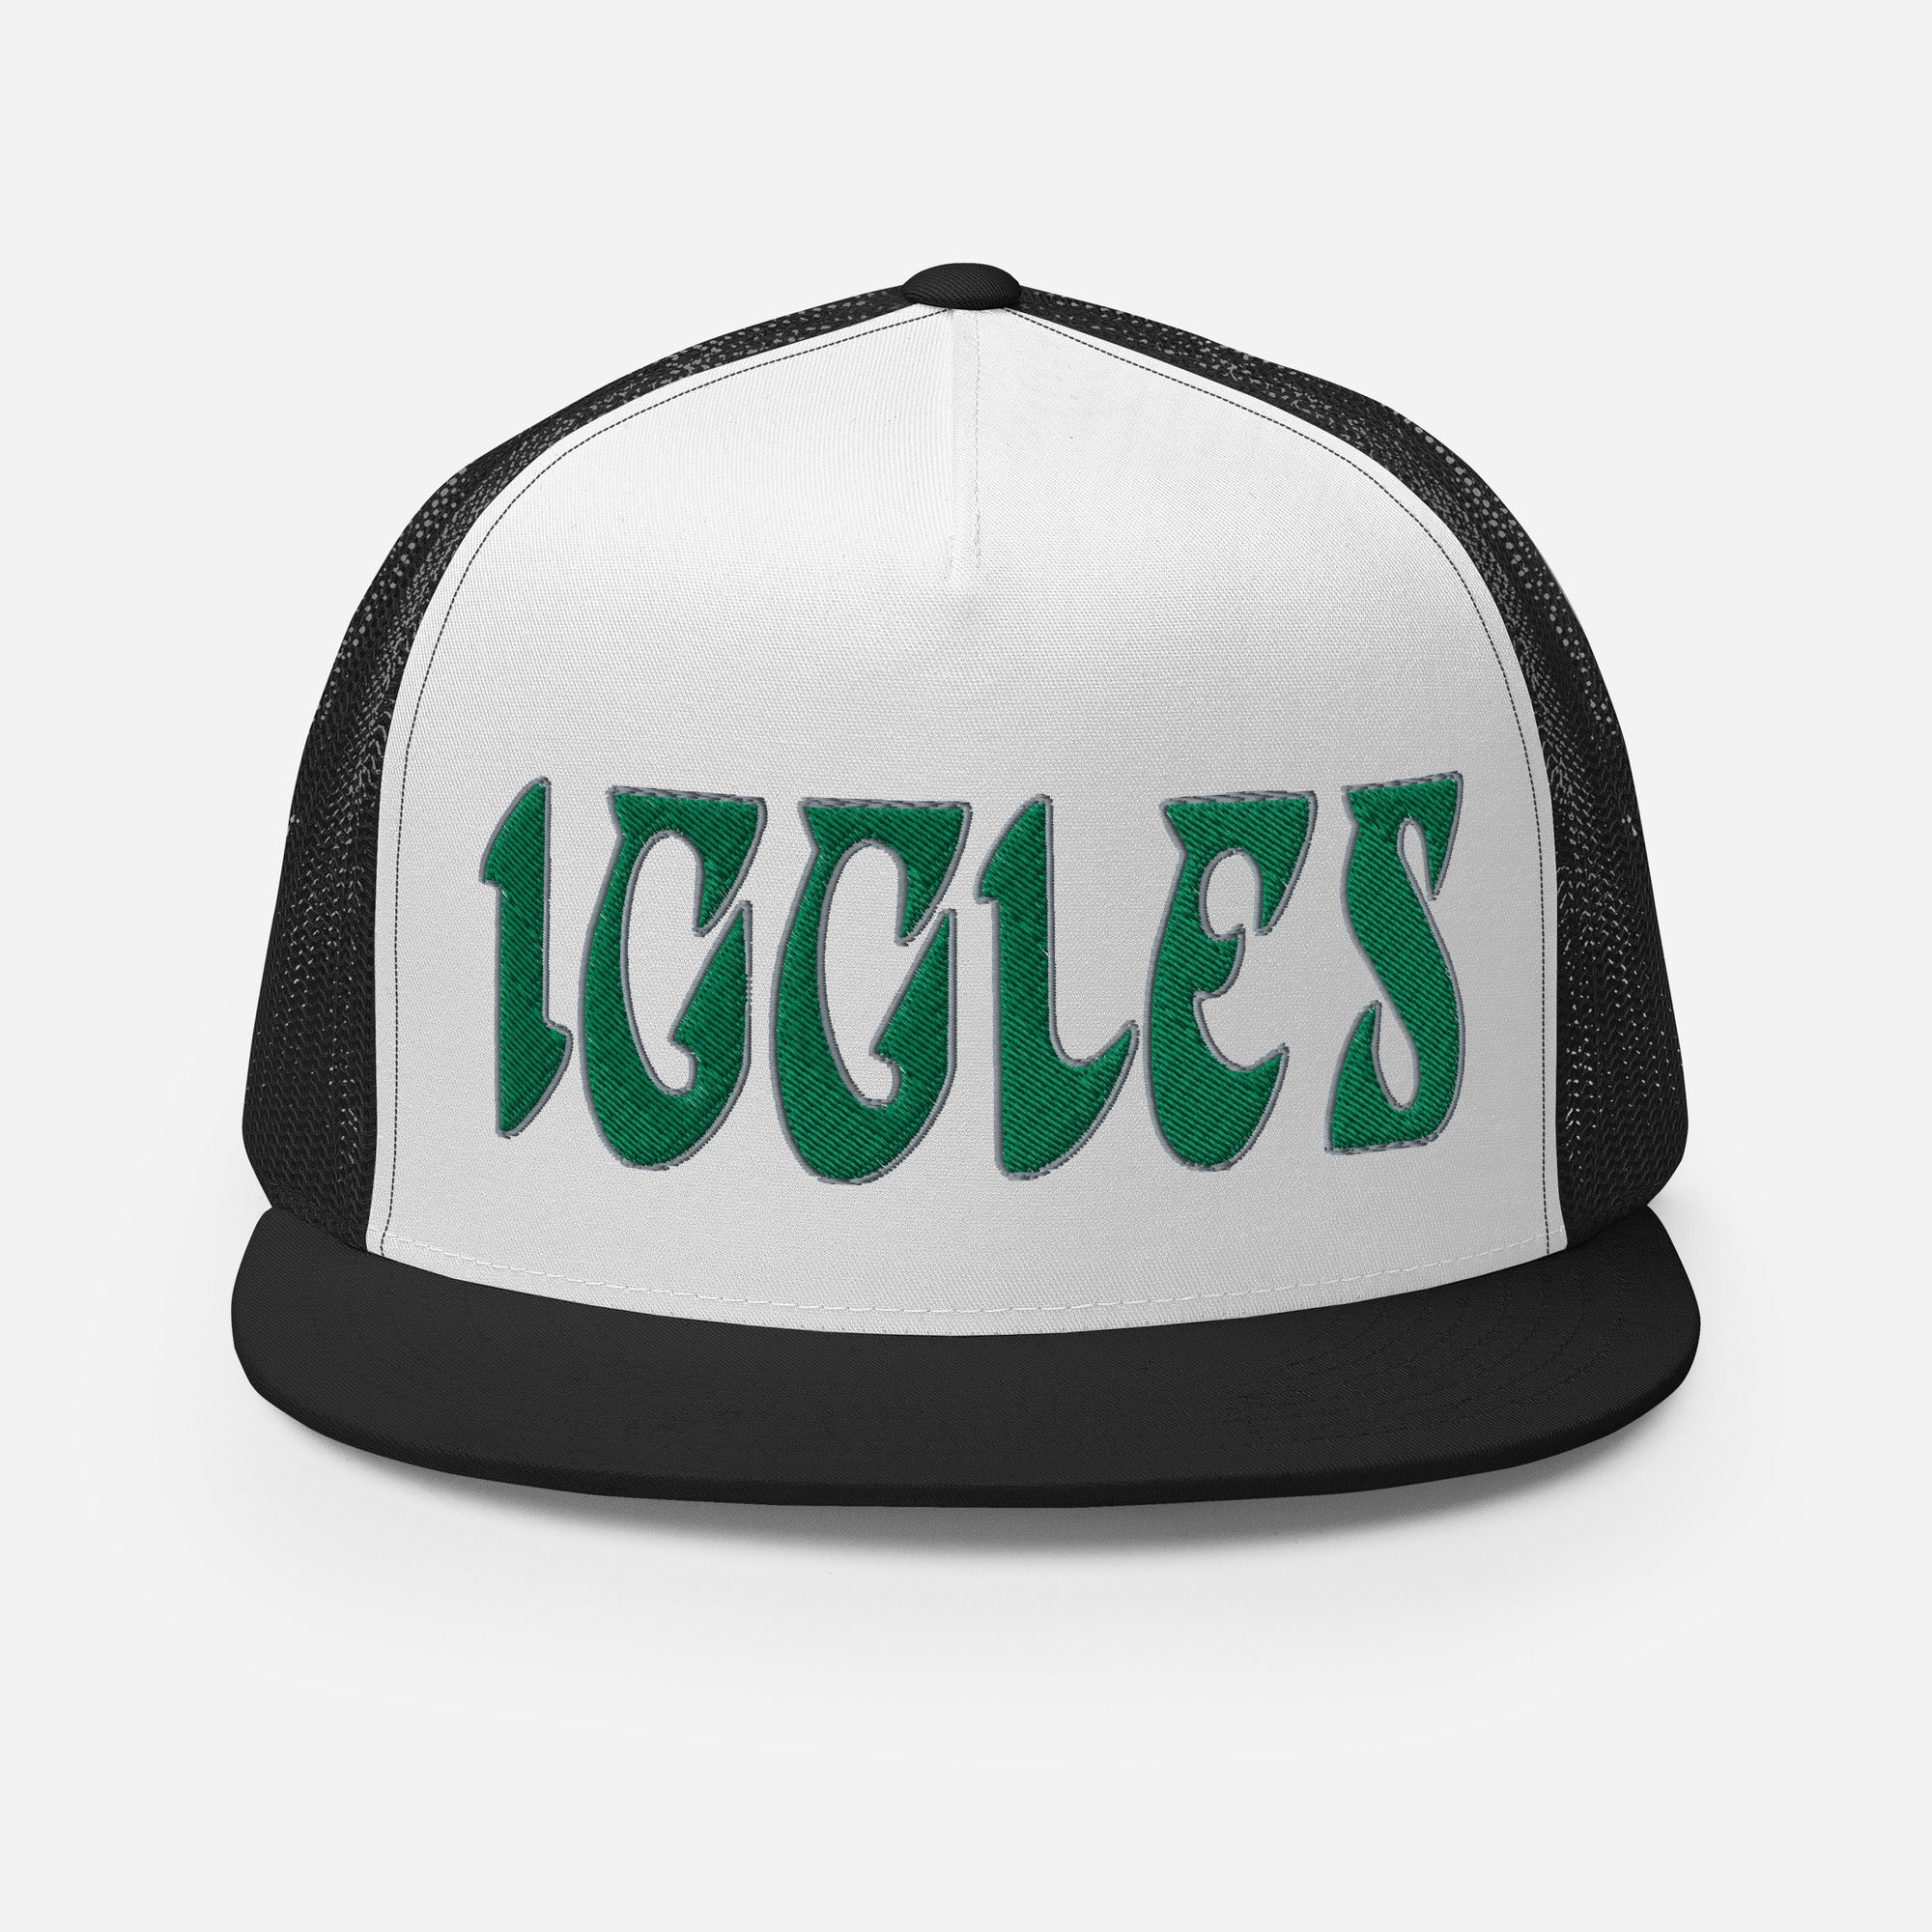 "Iggles" Trucker Hat